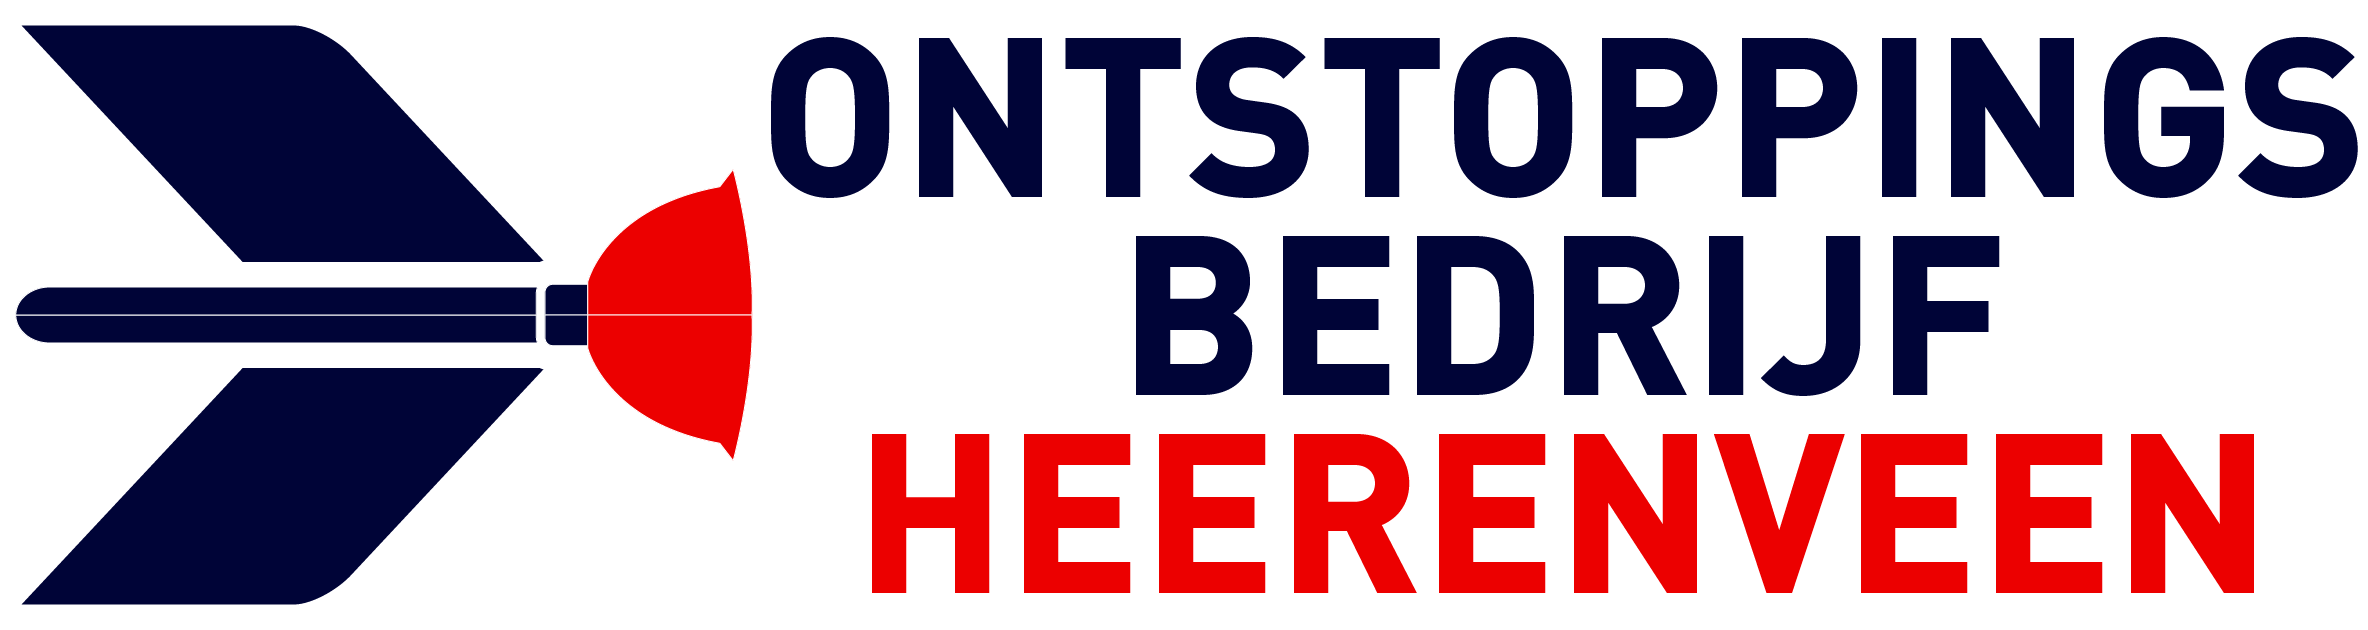 Ontstoppingsbedrijf Heerenveen logo